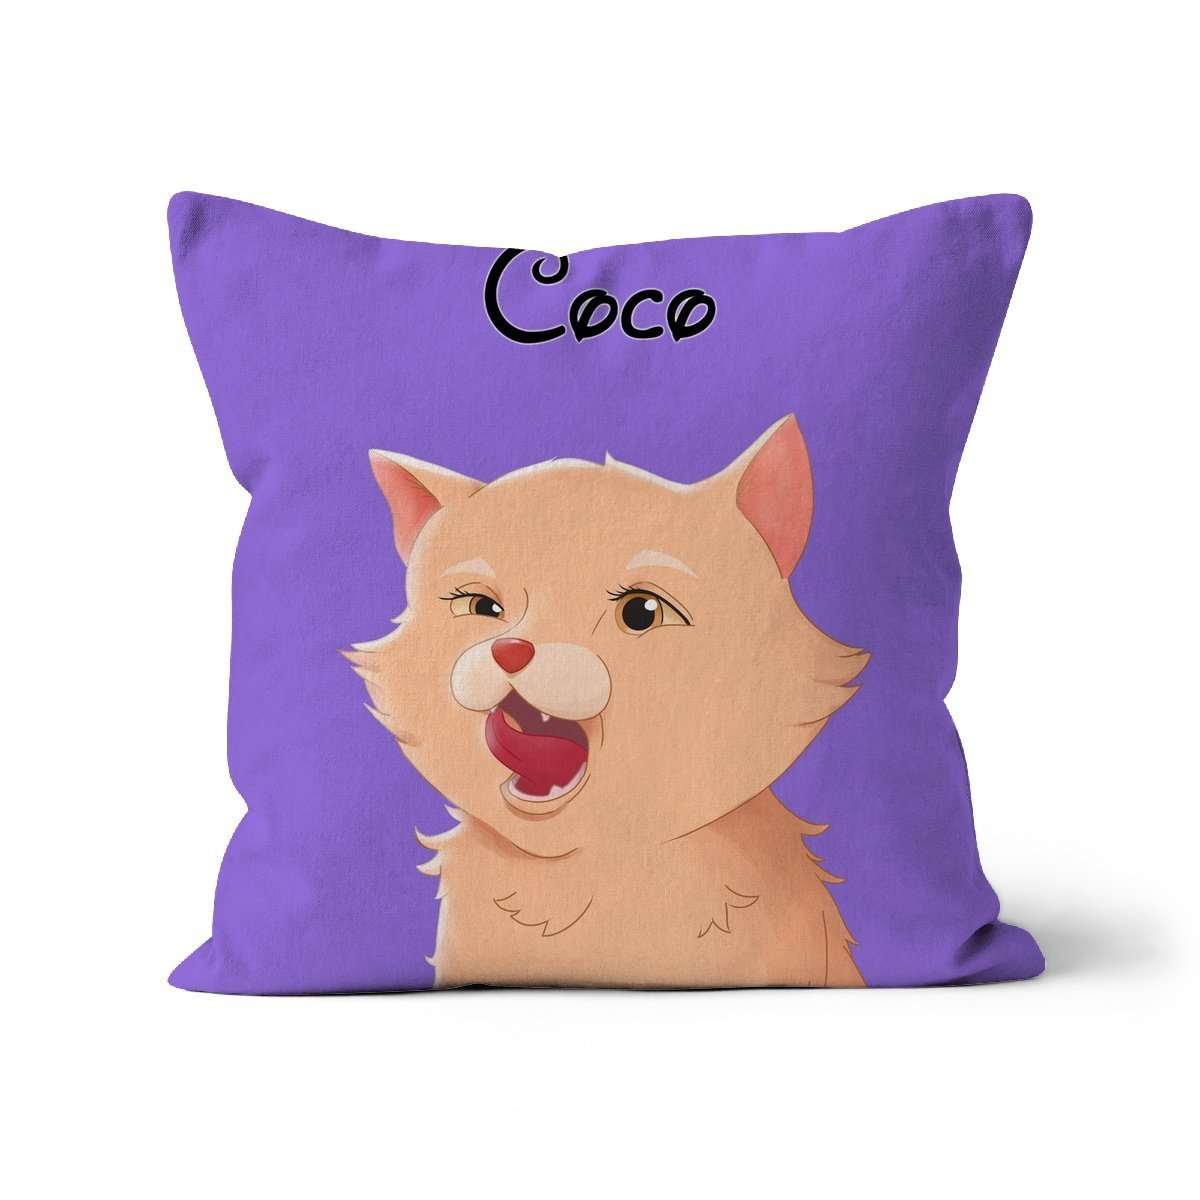 Cartoon: Custom 1 Pet Throw Pillow - Paw & Glory - #pet portraits# - #dog portraits# - #pet portraits uk#pawandglory, pet art pillow,personalised cat pillow, dog shaped pillows, custom pillow cover, pillows with dogs picture, my pet pillow